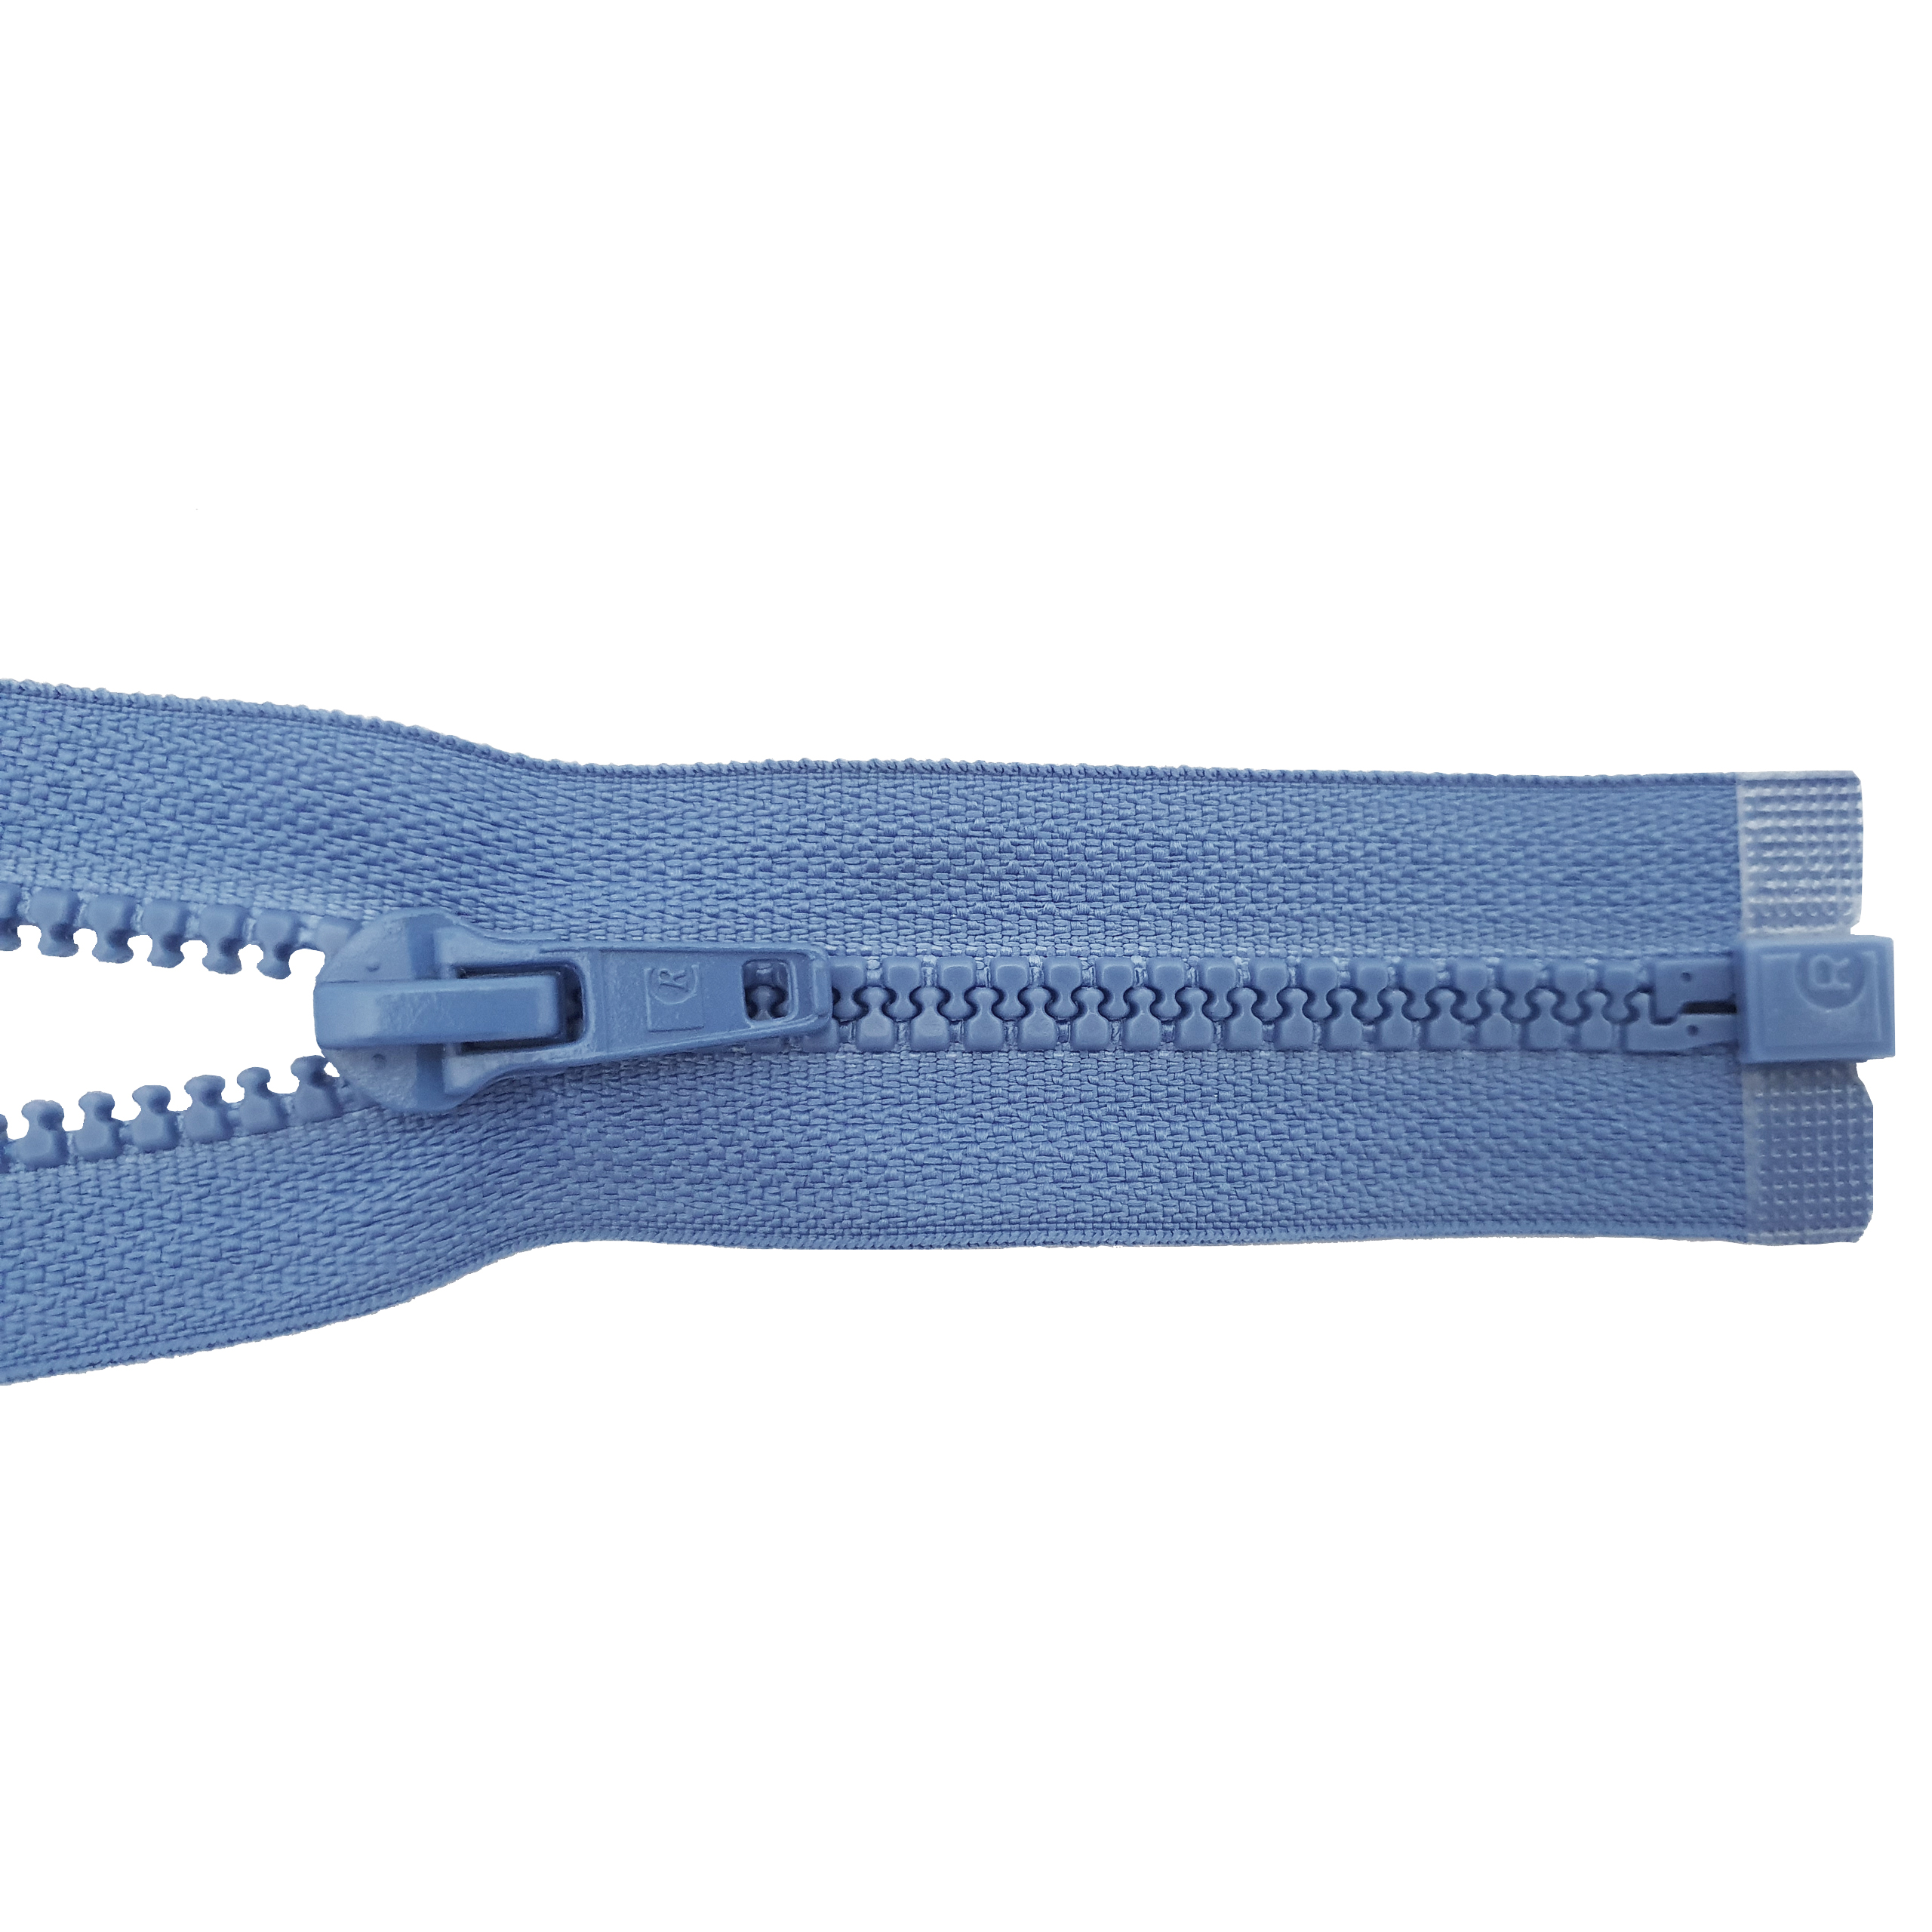 Reißverschluss, teilbar, Kstoff Zähne breit, graublau, hochwertiger Marken-Reißverschluss von Rubi/Barcelona